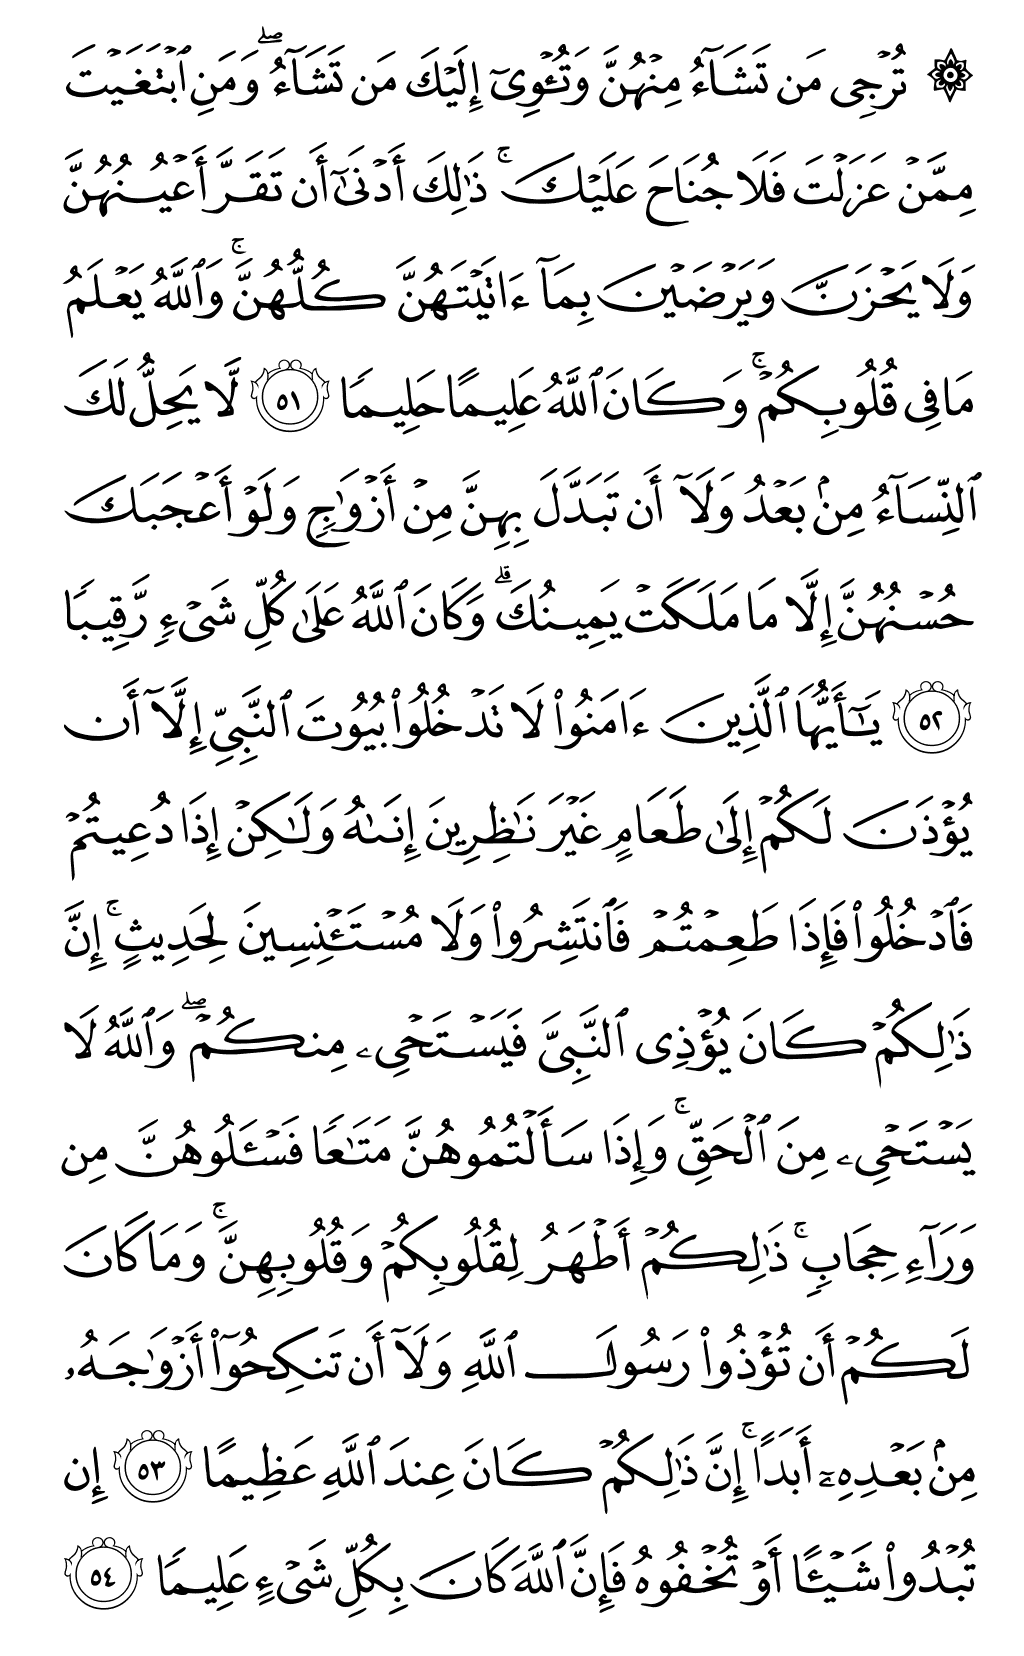 الصفحة رقم 425 من القرآن الكريم